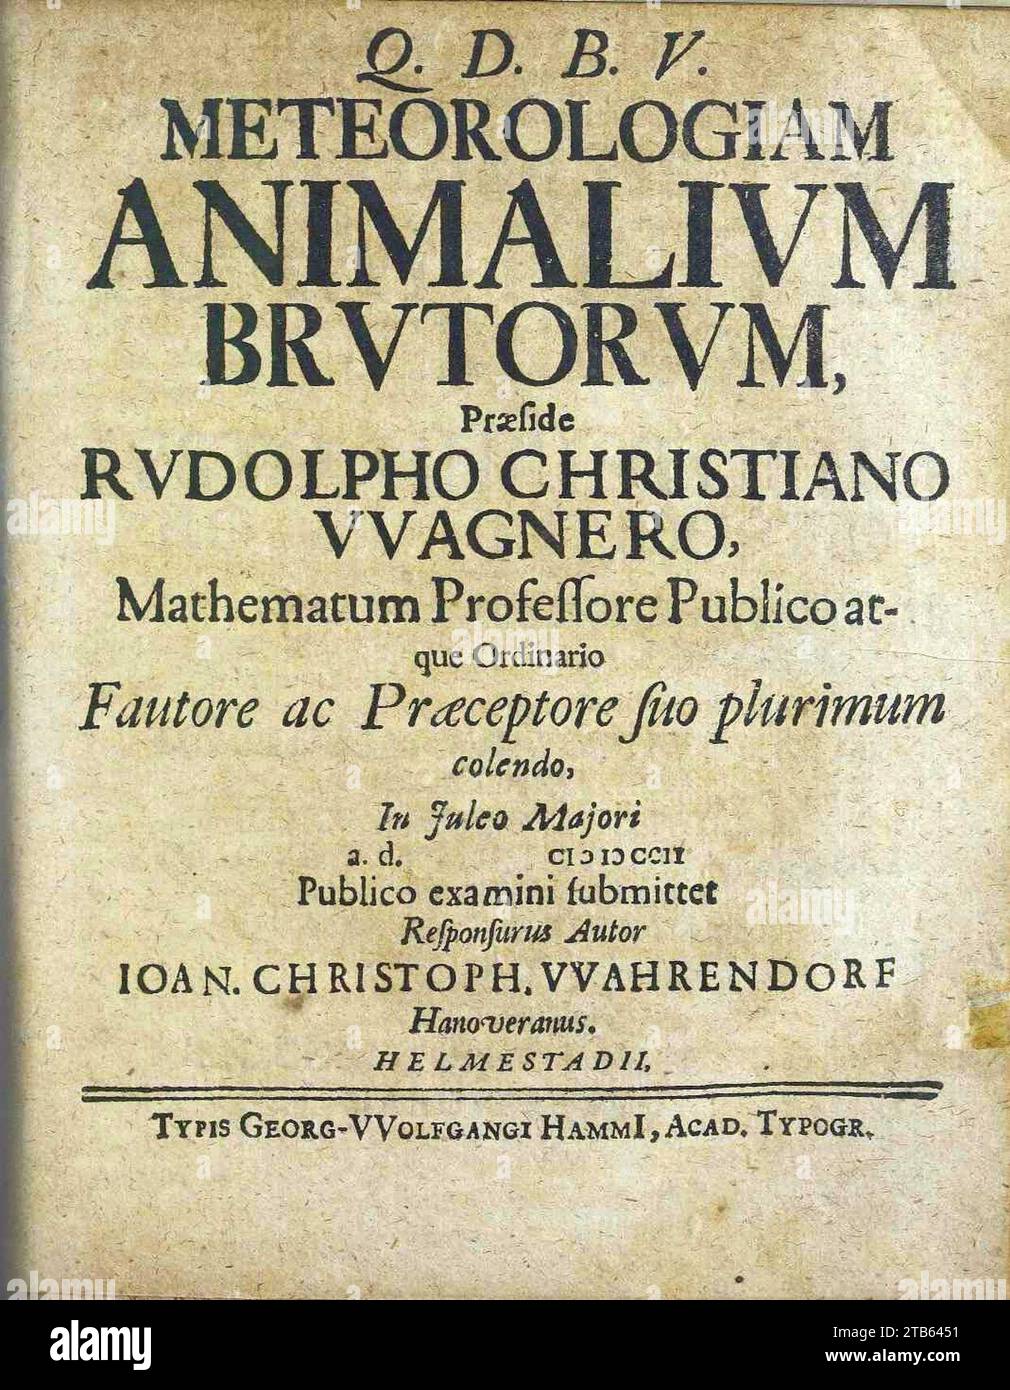 Wagner, Rudolf Christian – Meteorologia animalium brutorum, 1702 – BEIC 8674637. Stock Photo